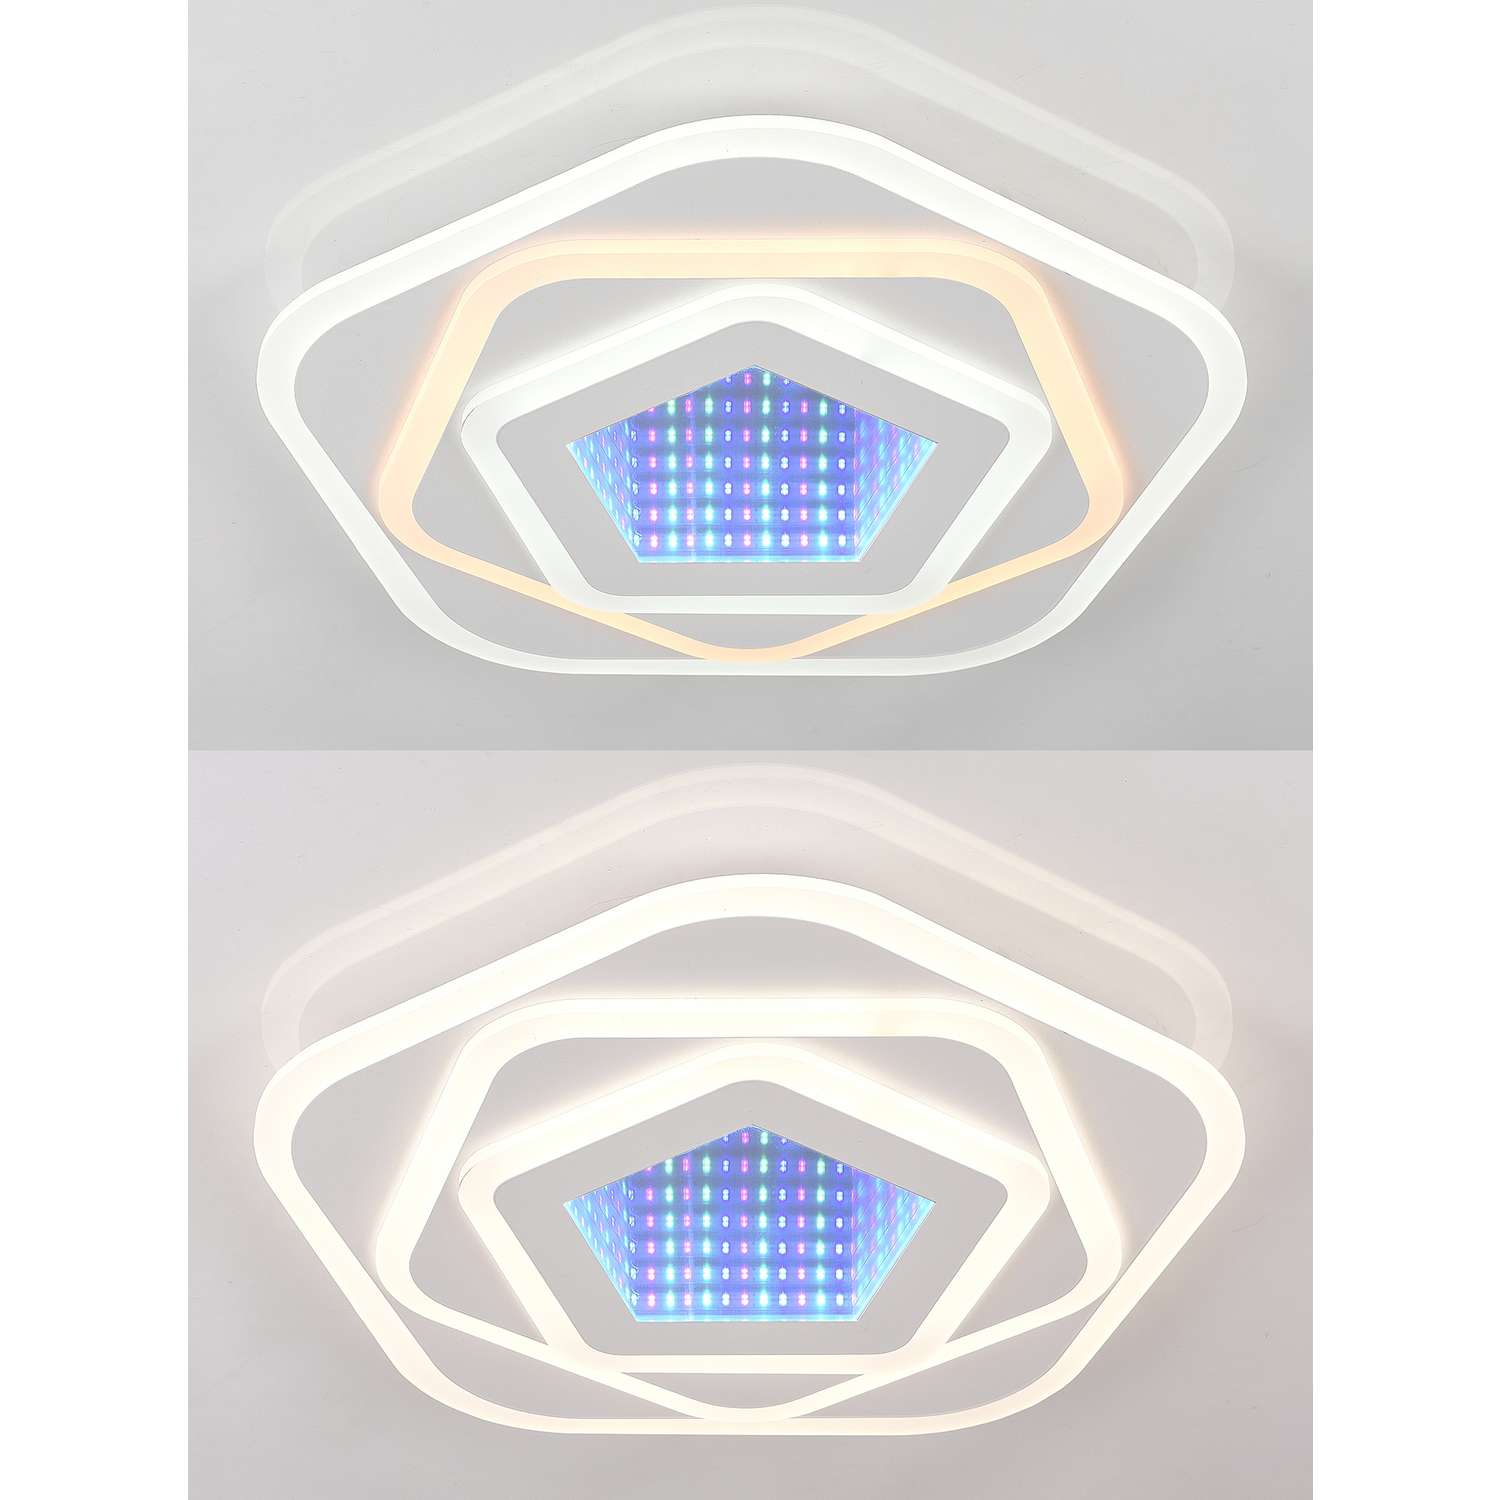 Светодиодный светильник NATALI KOVALTSEVA люстра 200W белый LED - фото 2